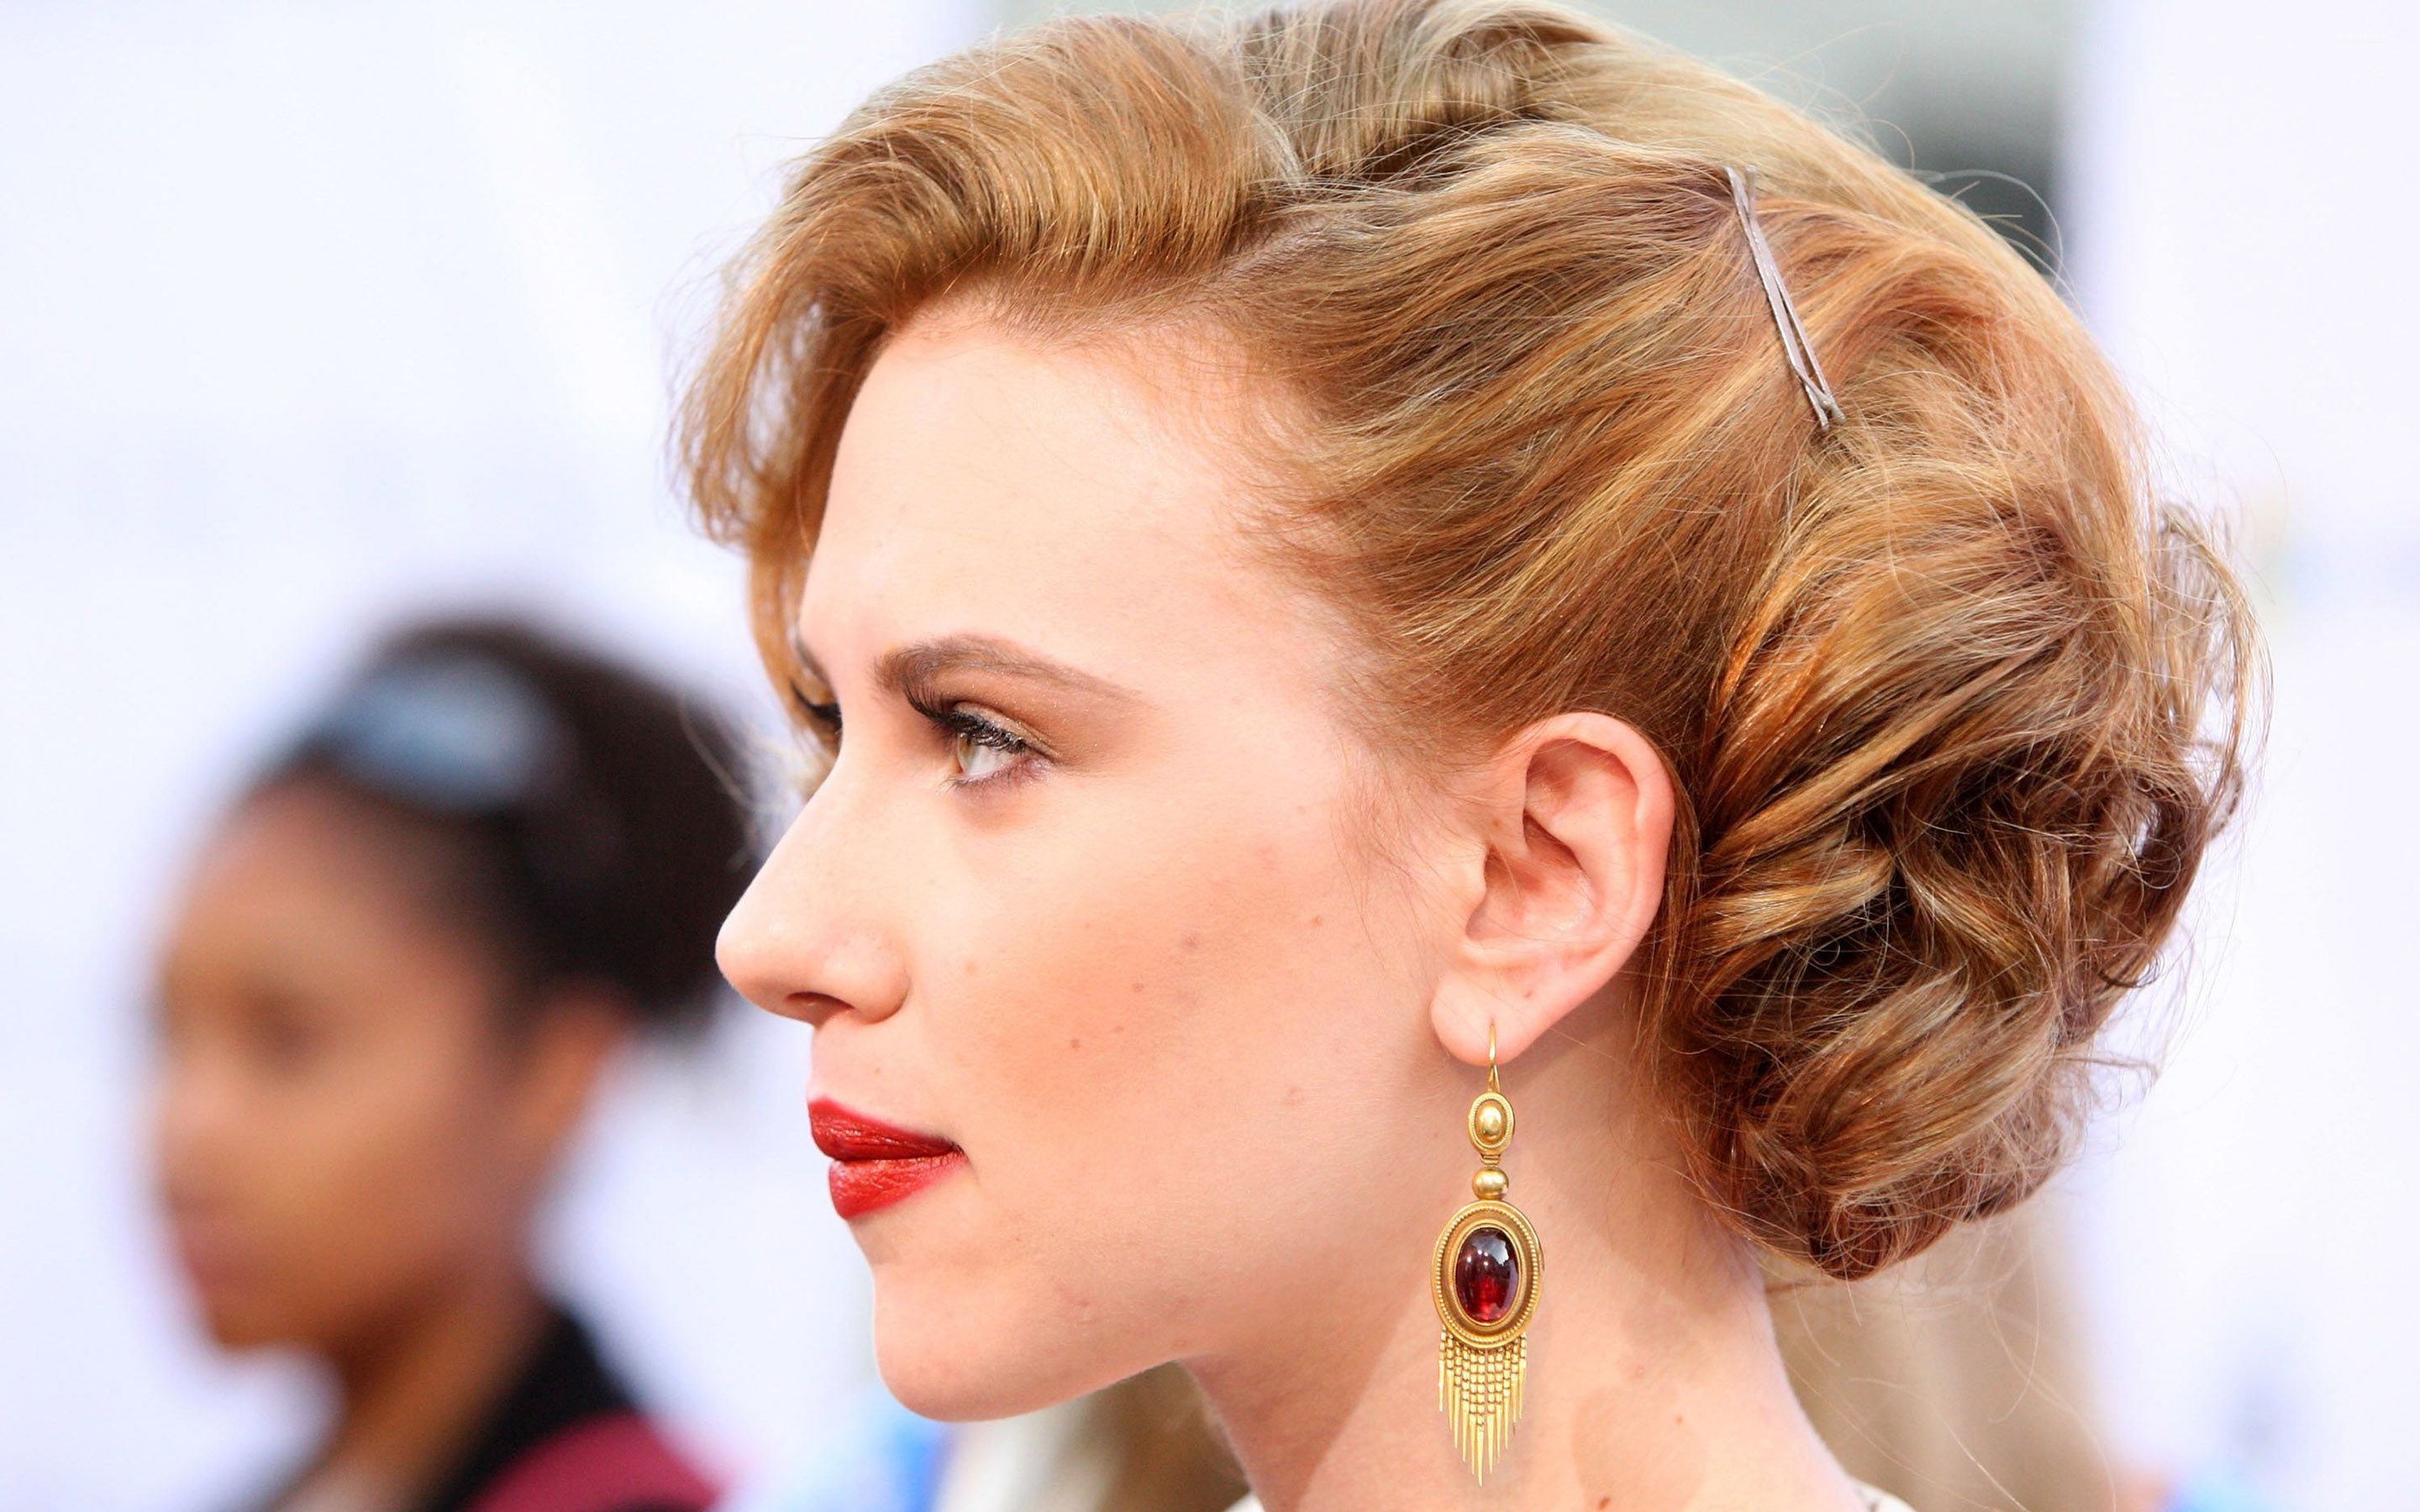 Earrings, Scarlett Johansson, Golden earrings, Celebrity fashion, 2880x1800 HD Desktop